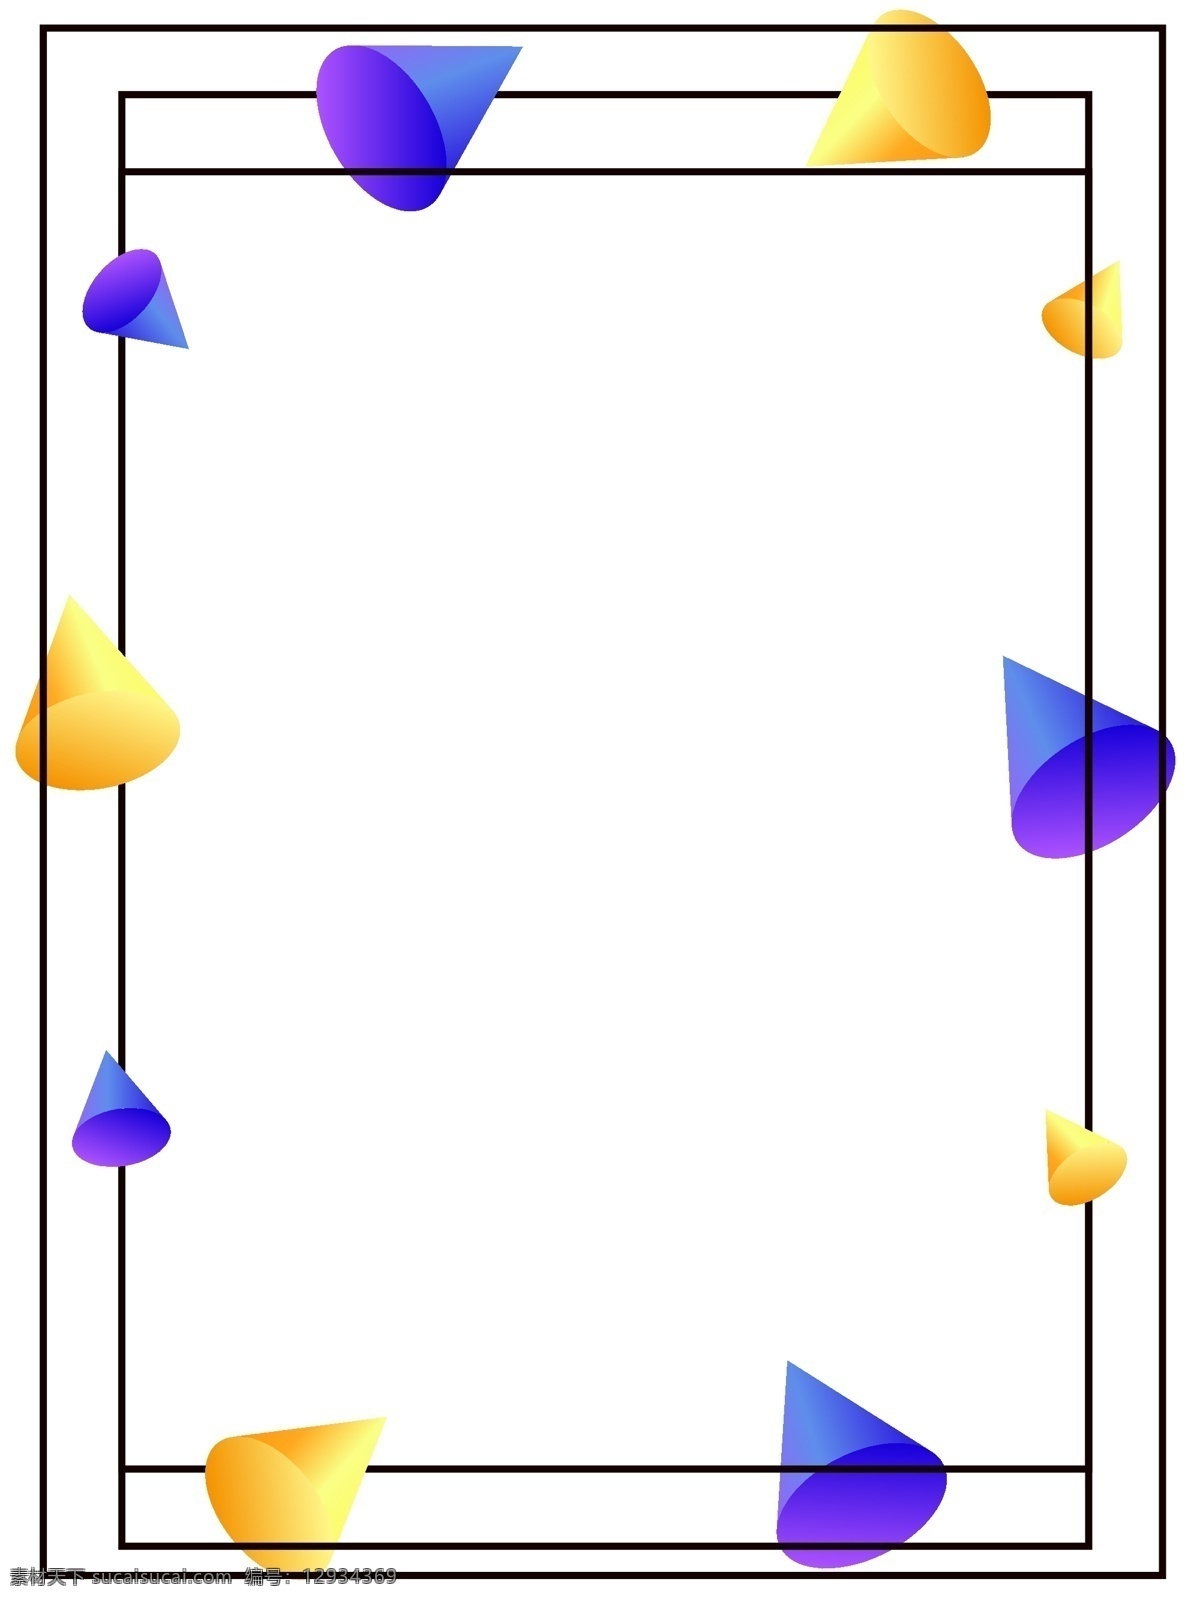 彩色 渐变 绕 转 旋转 回忆 立体几何 背景 几何 立体 相框 蓝紫色 黄色 绕转旋转